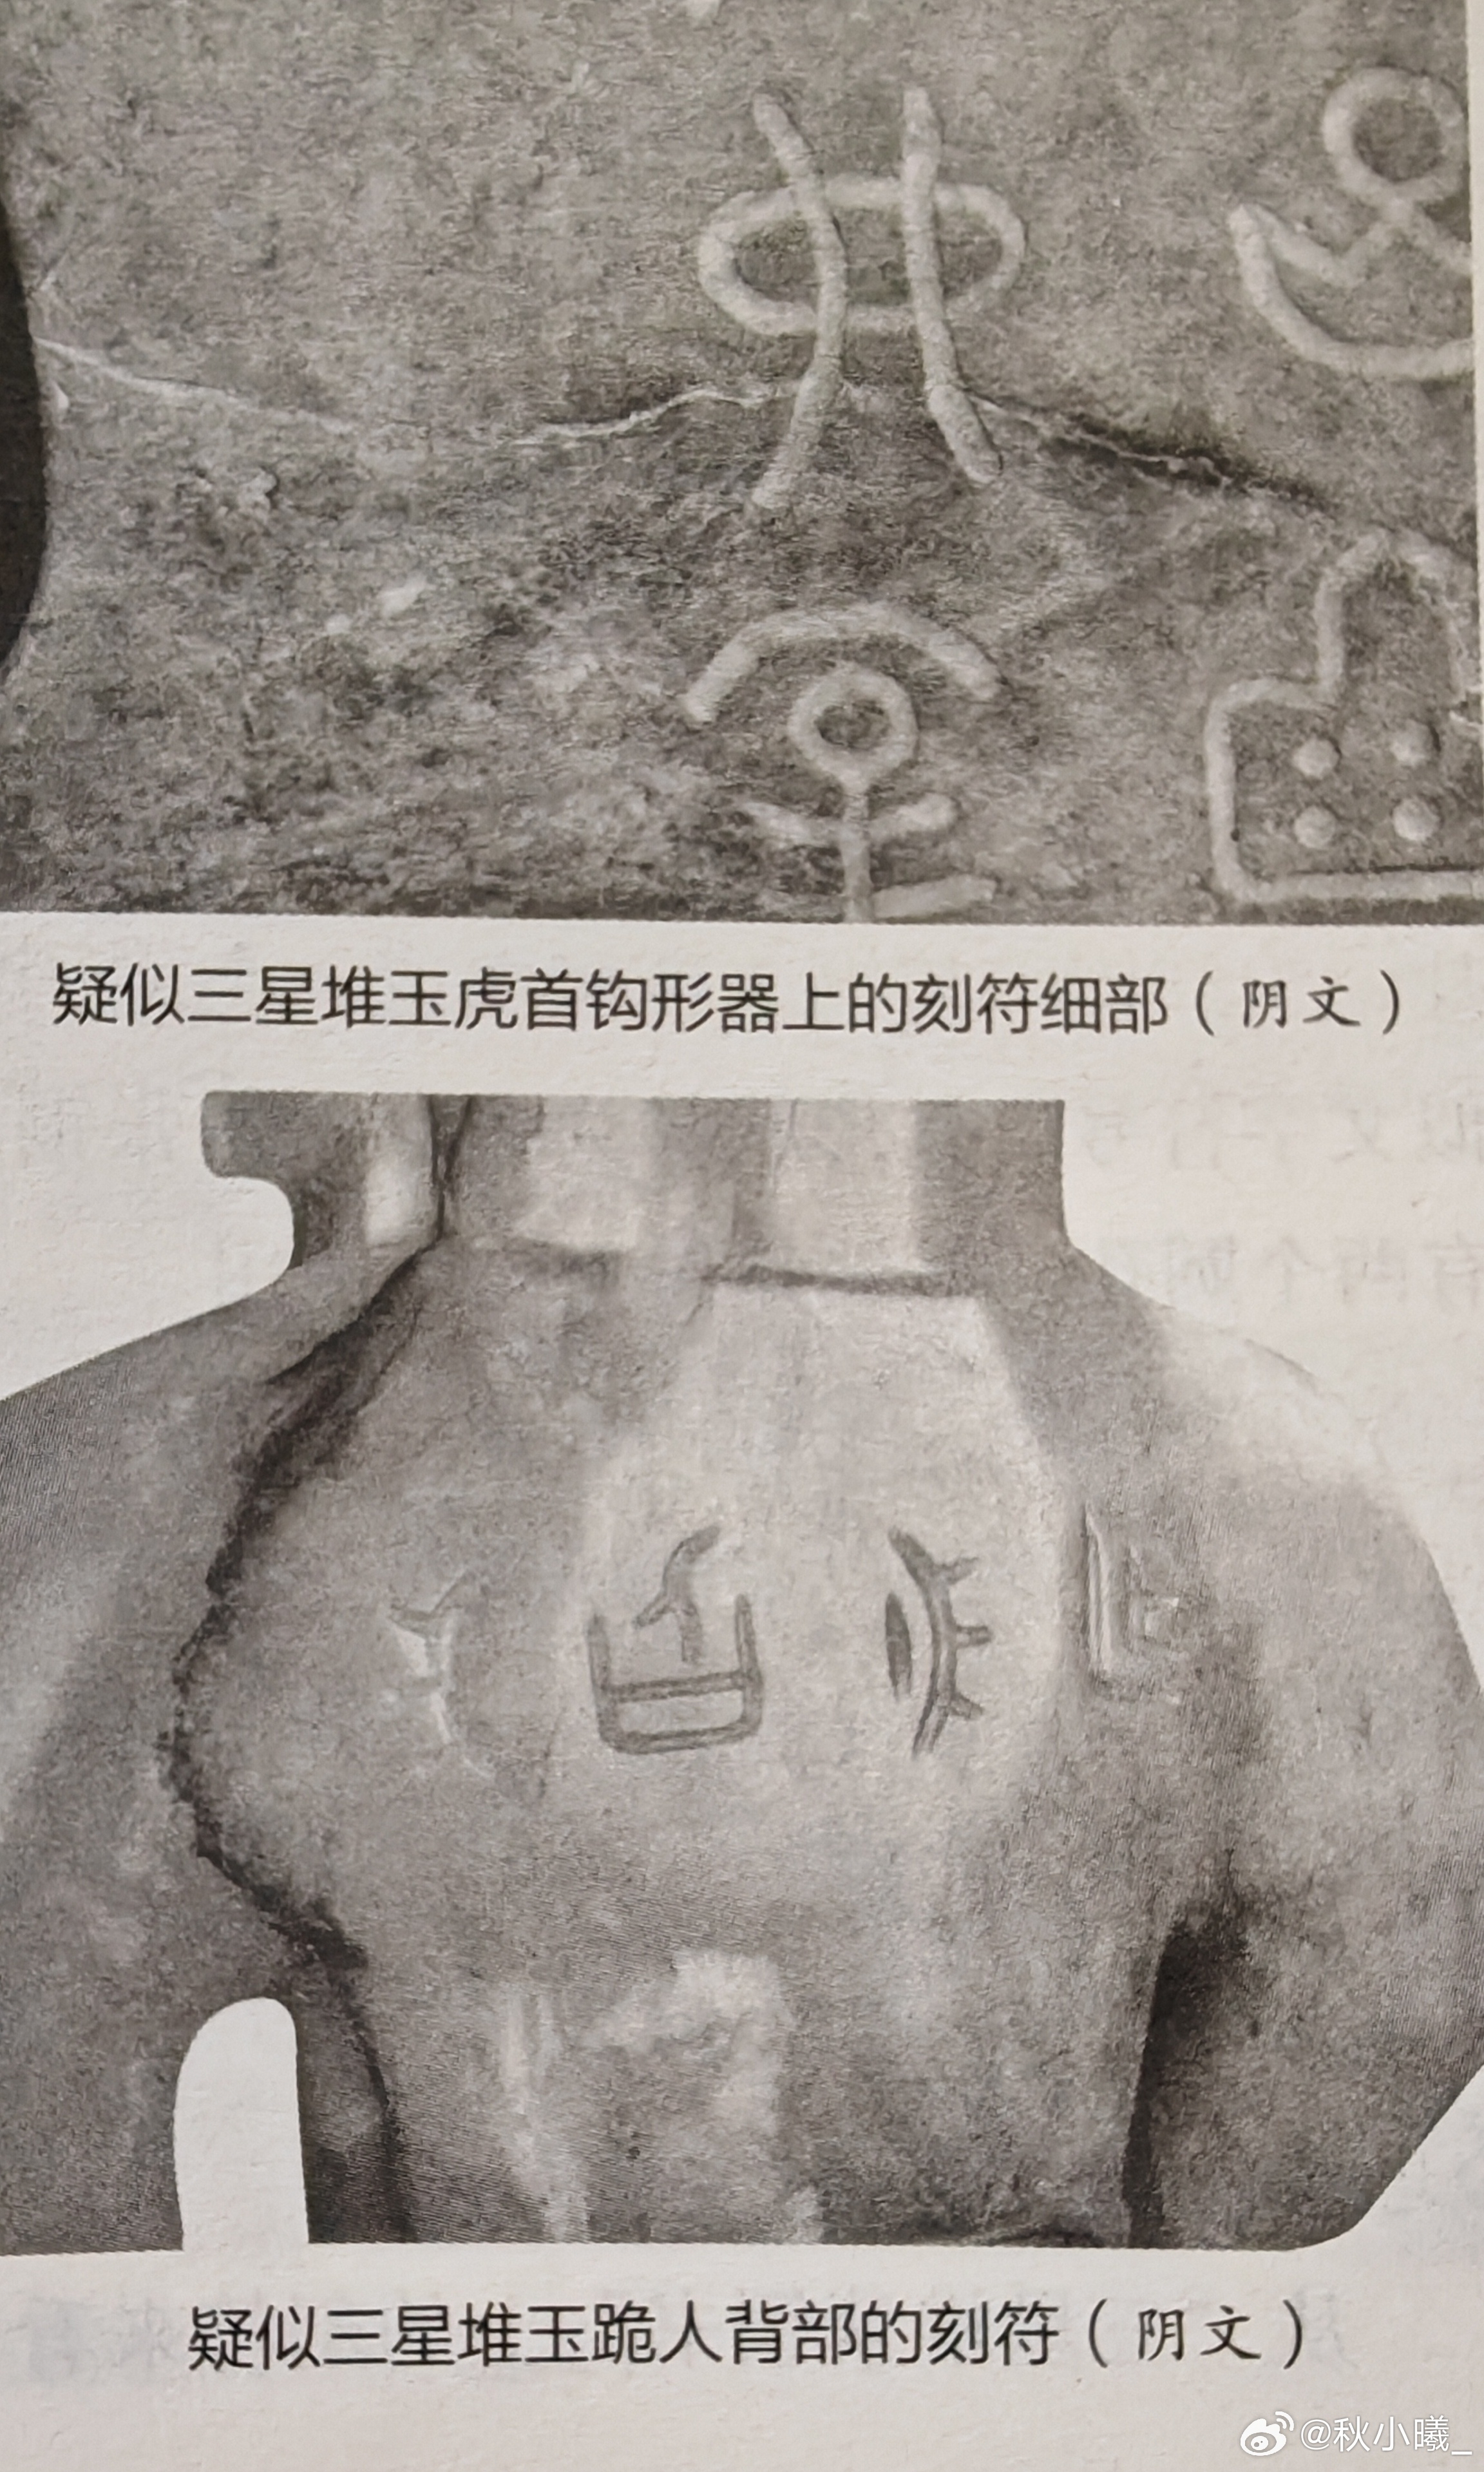 探索玉帝脖子上神秘符号的起源、象征意义及文化影响